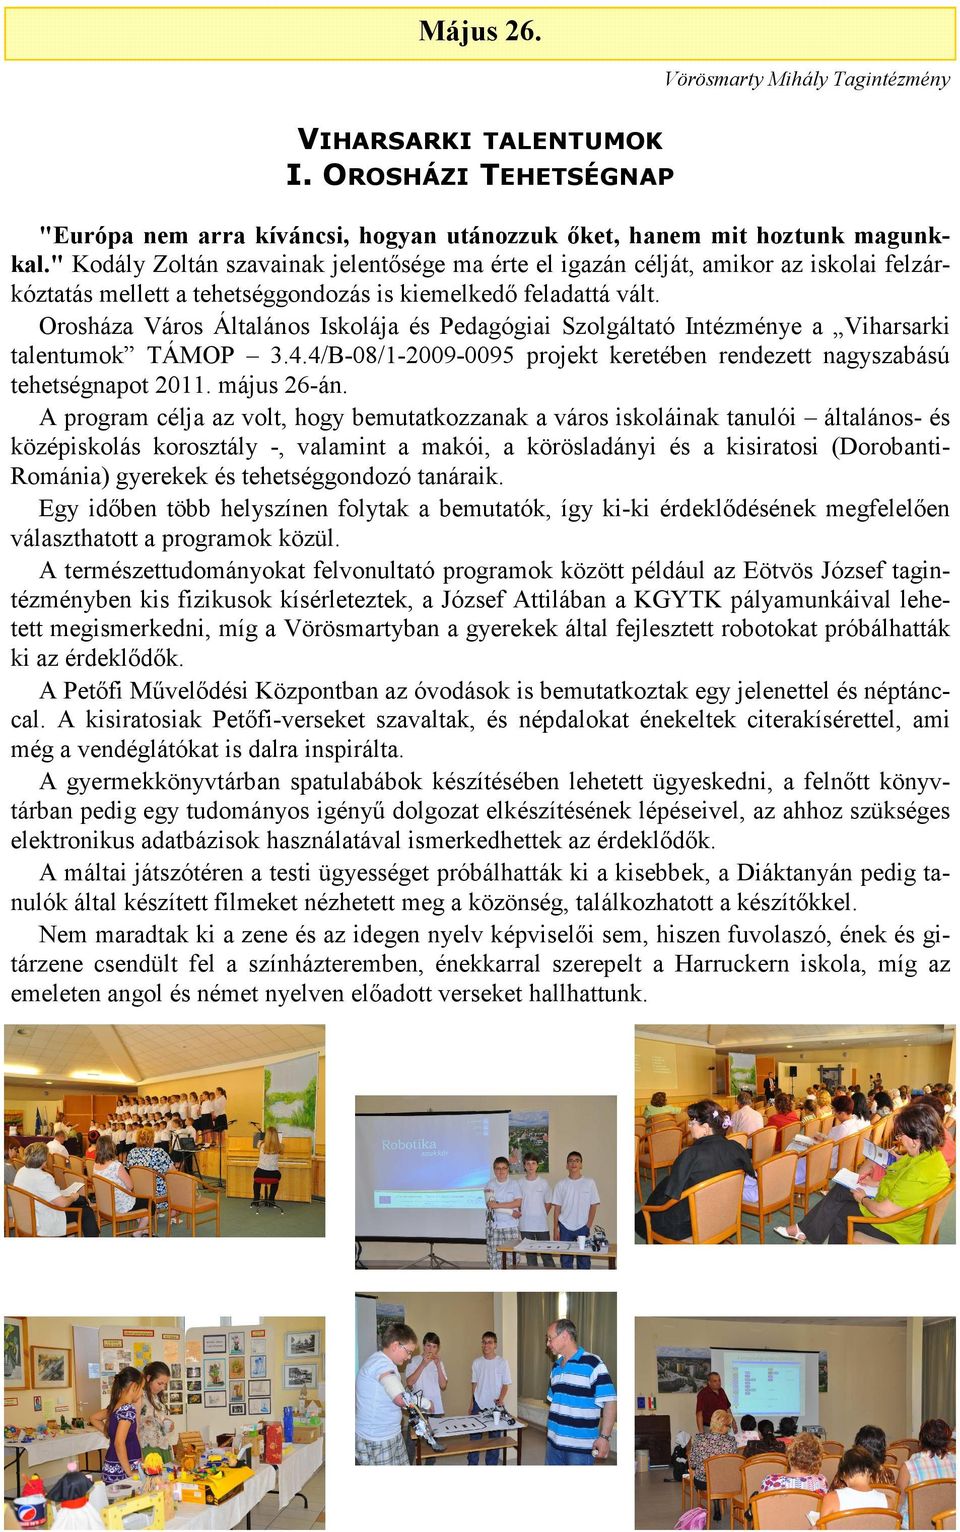 Orosháza Város Általános Iskolája és Pedagógiai Szolgáltató Intézménye a Viharsarki talentumok TÁMOP 3.4.4/B-08/1-2009-0095 projekt keretében rendezett nagyszabású tehetségnapot 2011. május 26-án.